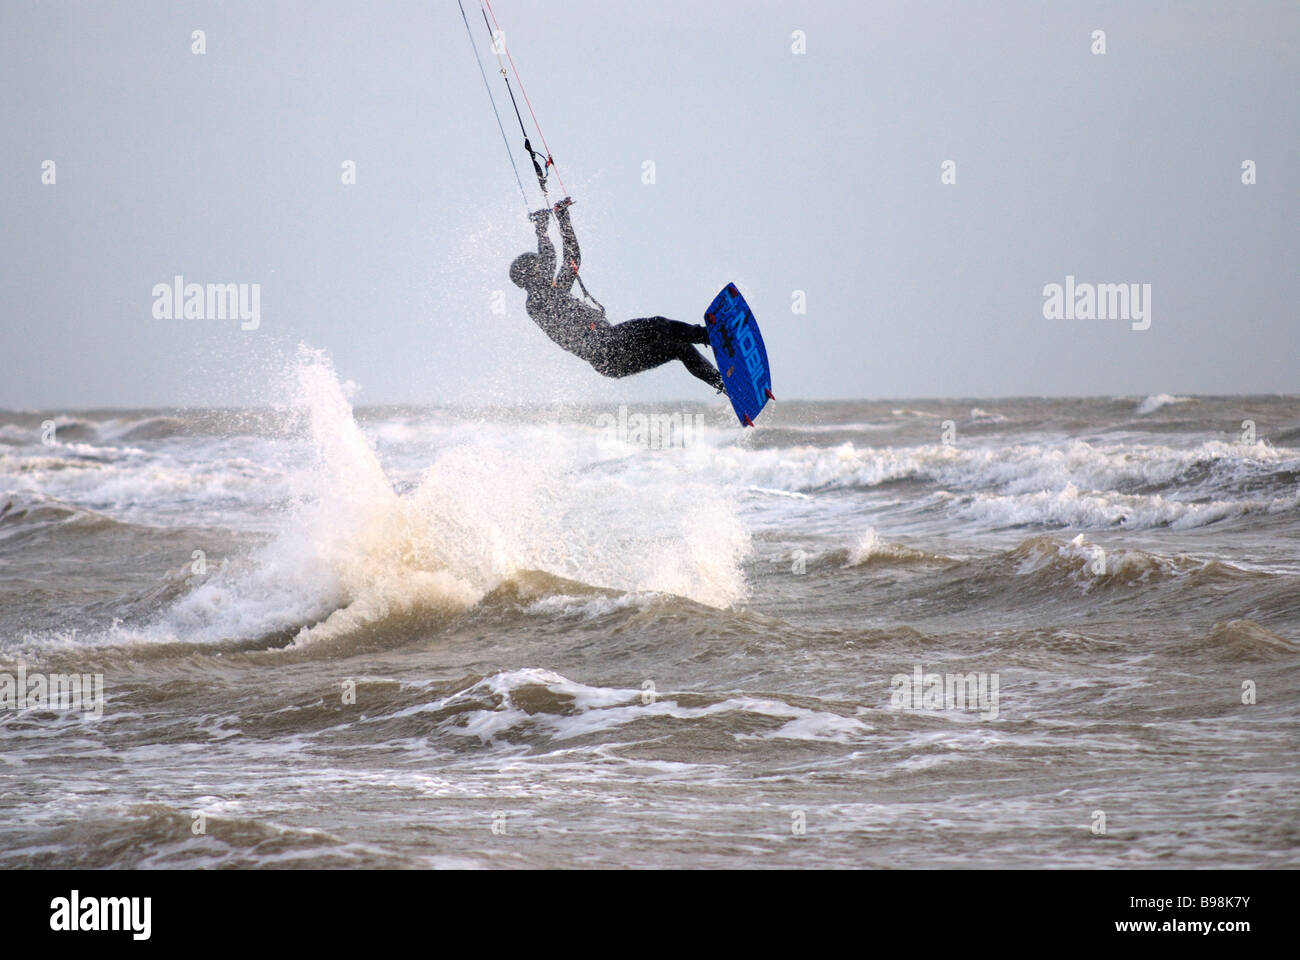 Kitesurfer off saltando attraverso l'aria fuori onda Foto Stock